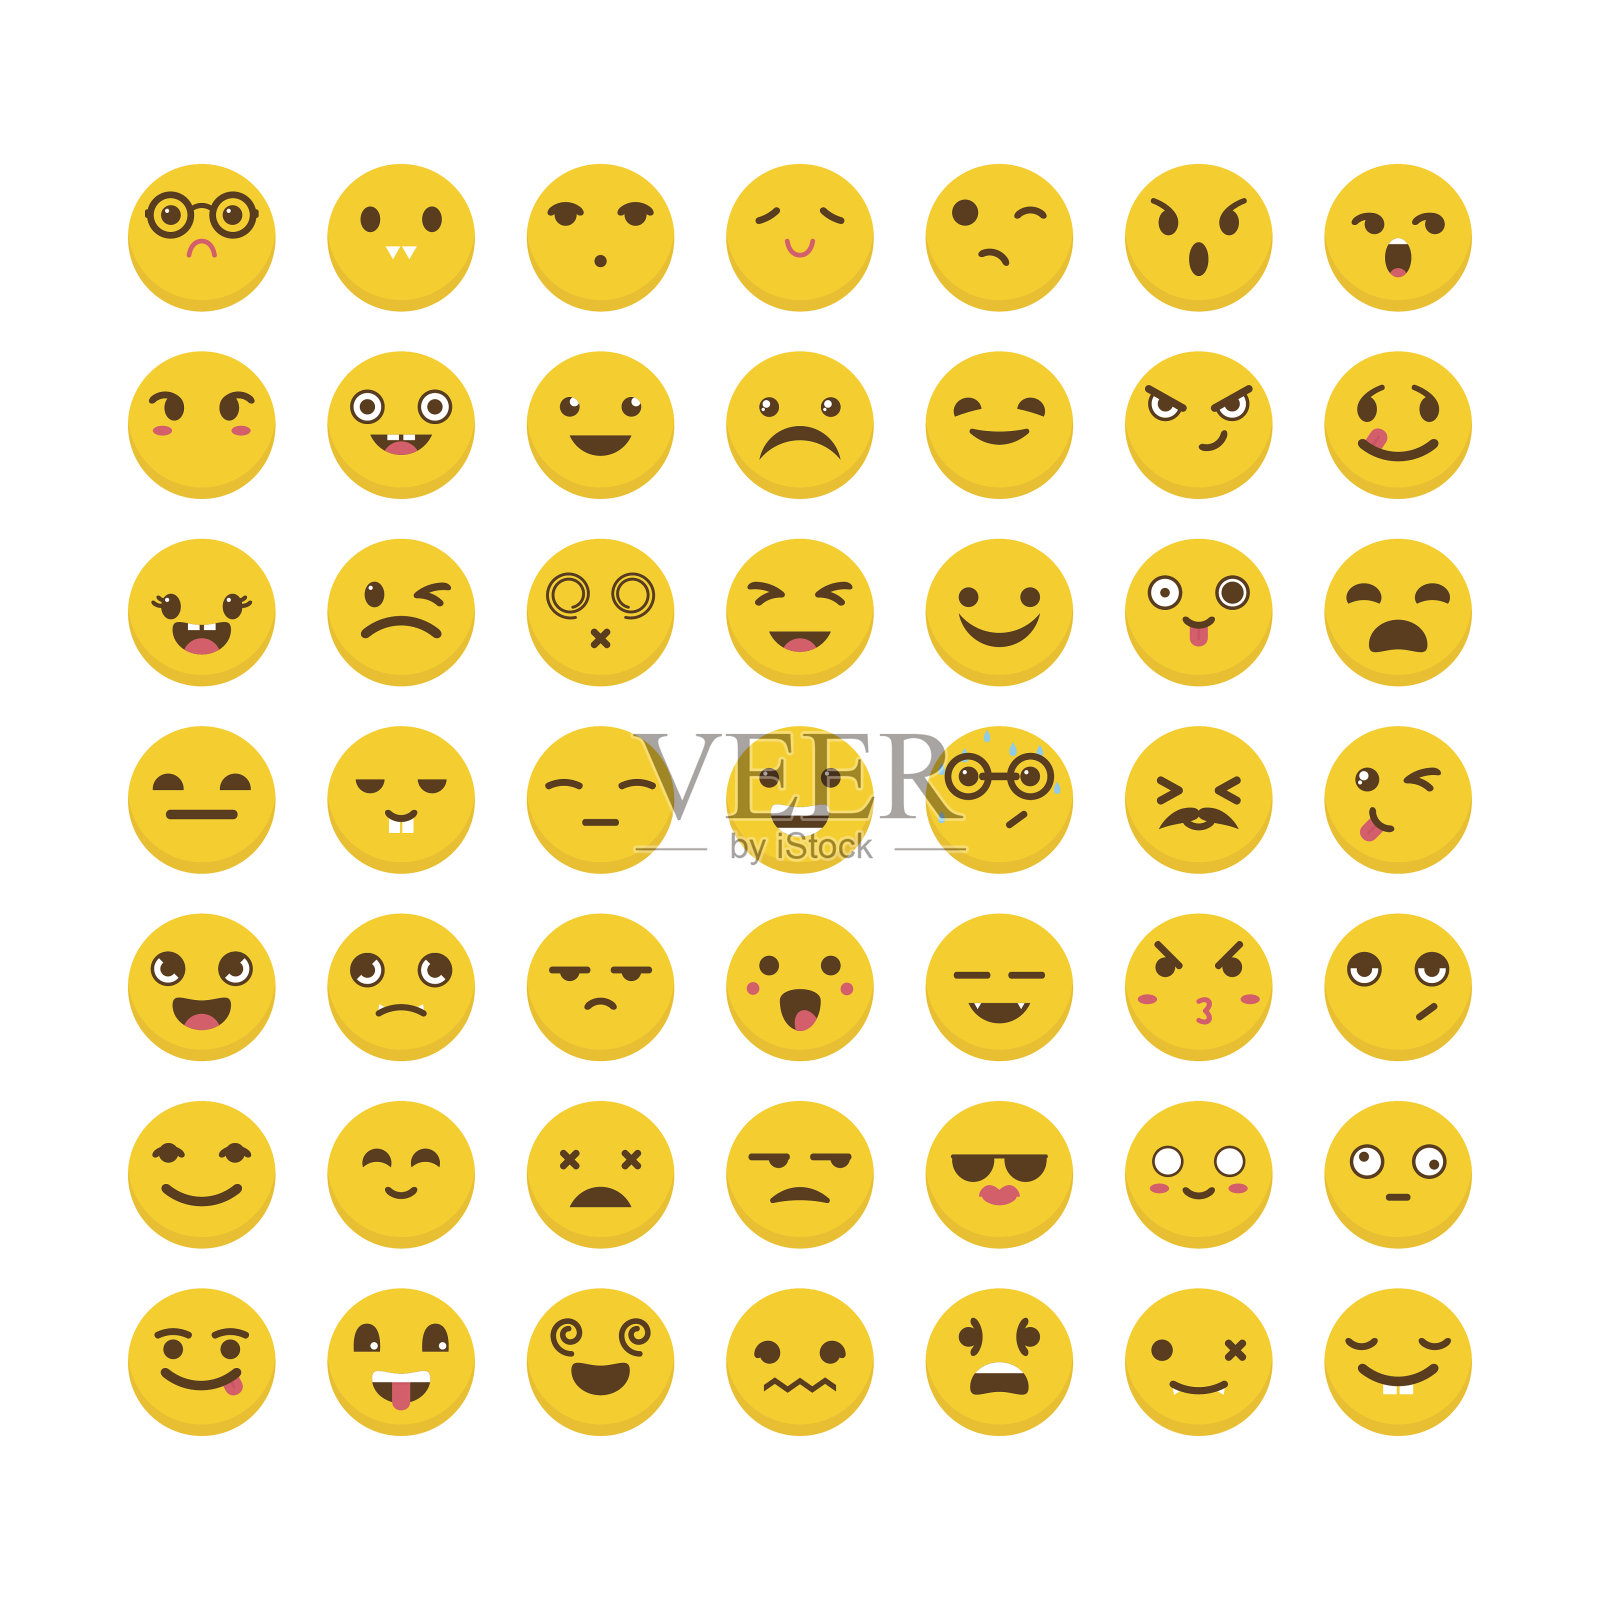 的表情符号。可爱的emoji图标。平面设计。有趣的卡通面孔。阿凡达插画图片素材